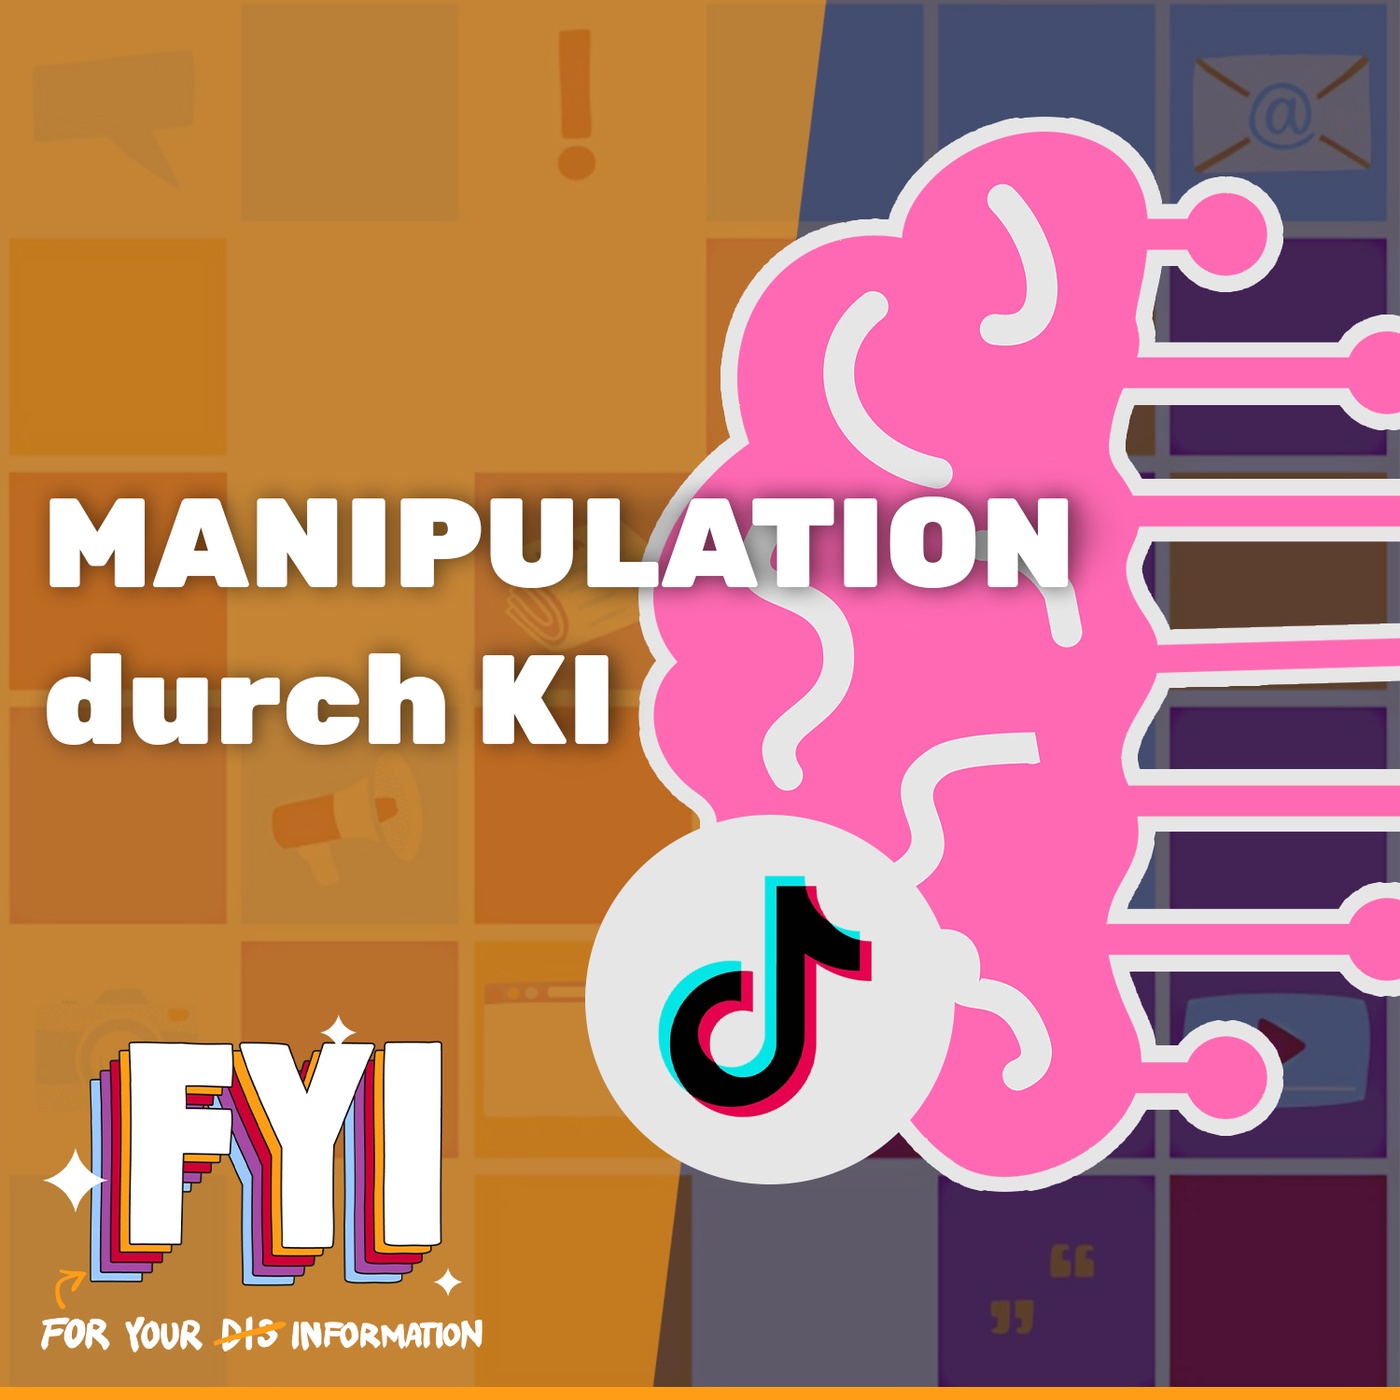 Manipulation durch KI - Was ist echt? | FYI #03 mit Bastian Schlange, Ilyass Alaoui & Leo Barina